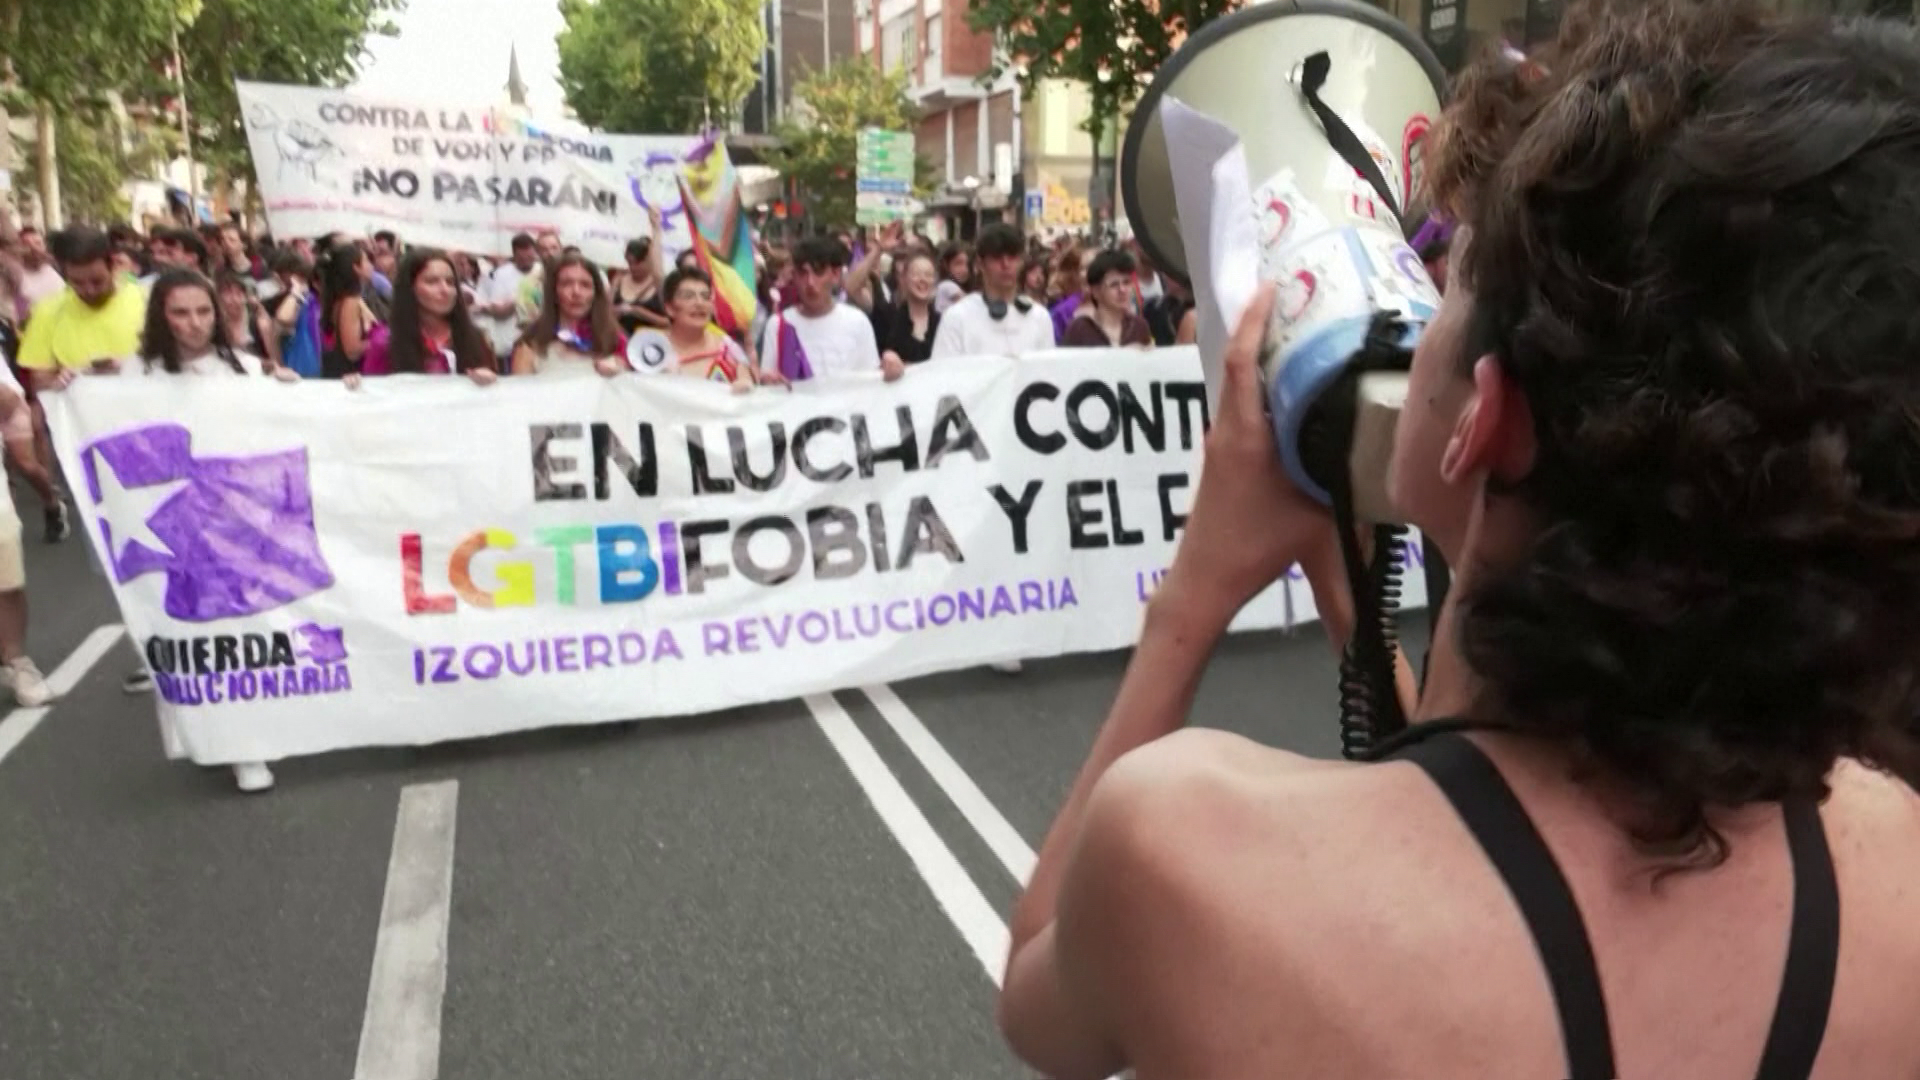 Politikai meneteléssé változott a pride Madridban